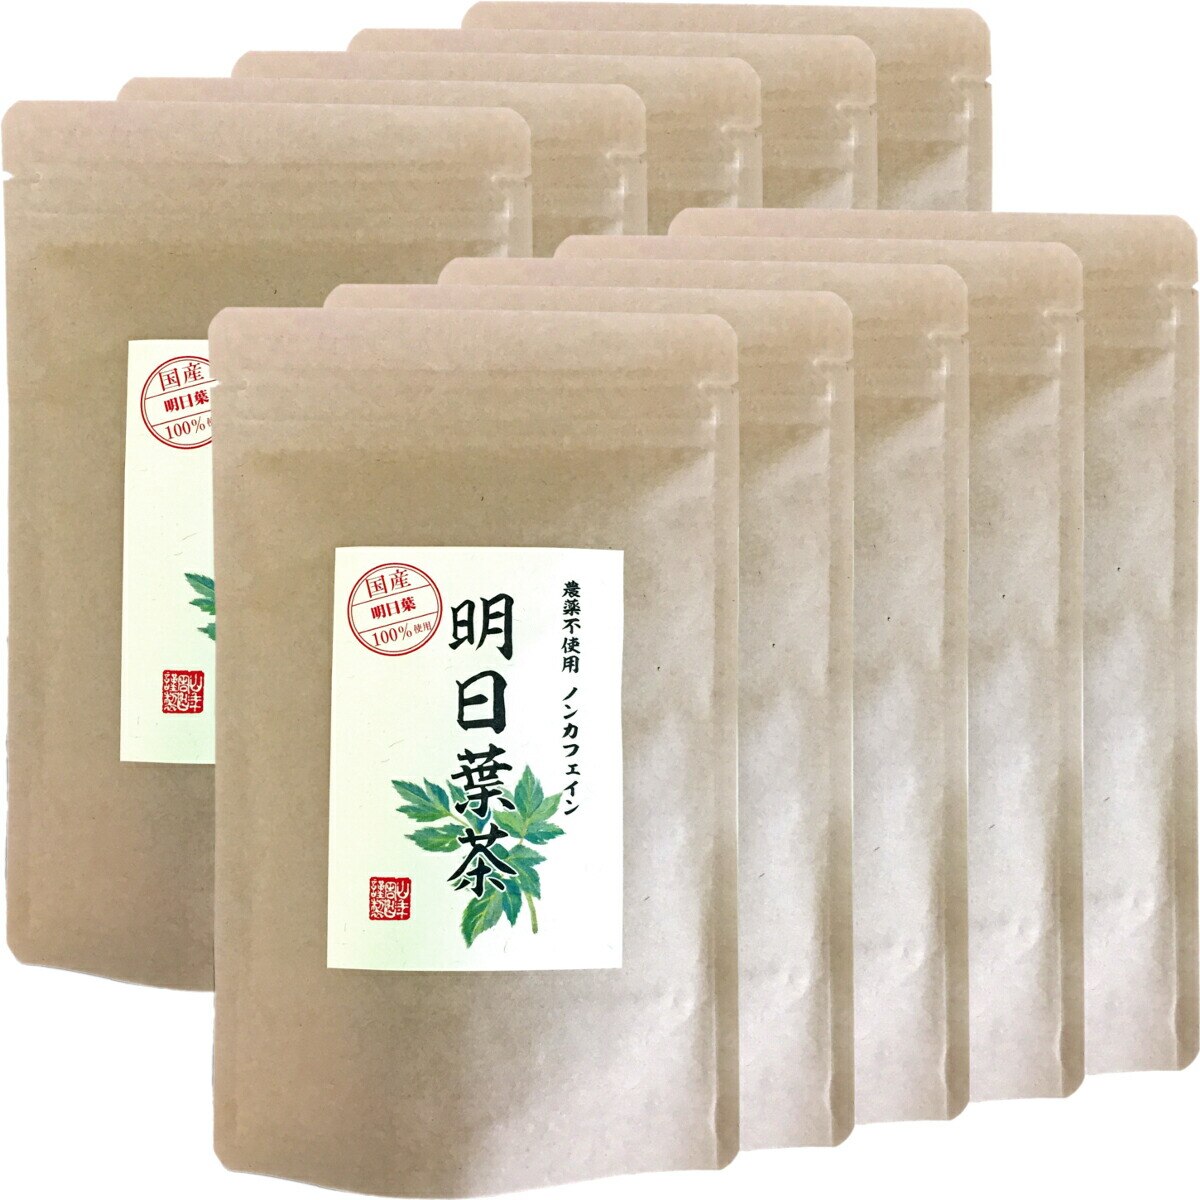 国産 無農薬 100% 明日葉茶 40g10袋セット 伊豆諸島で採れた明日葉茶 ノンカフェイン